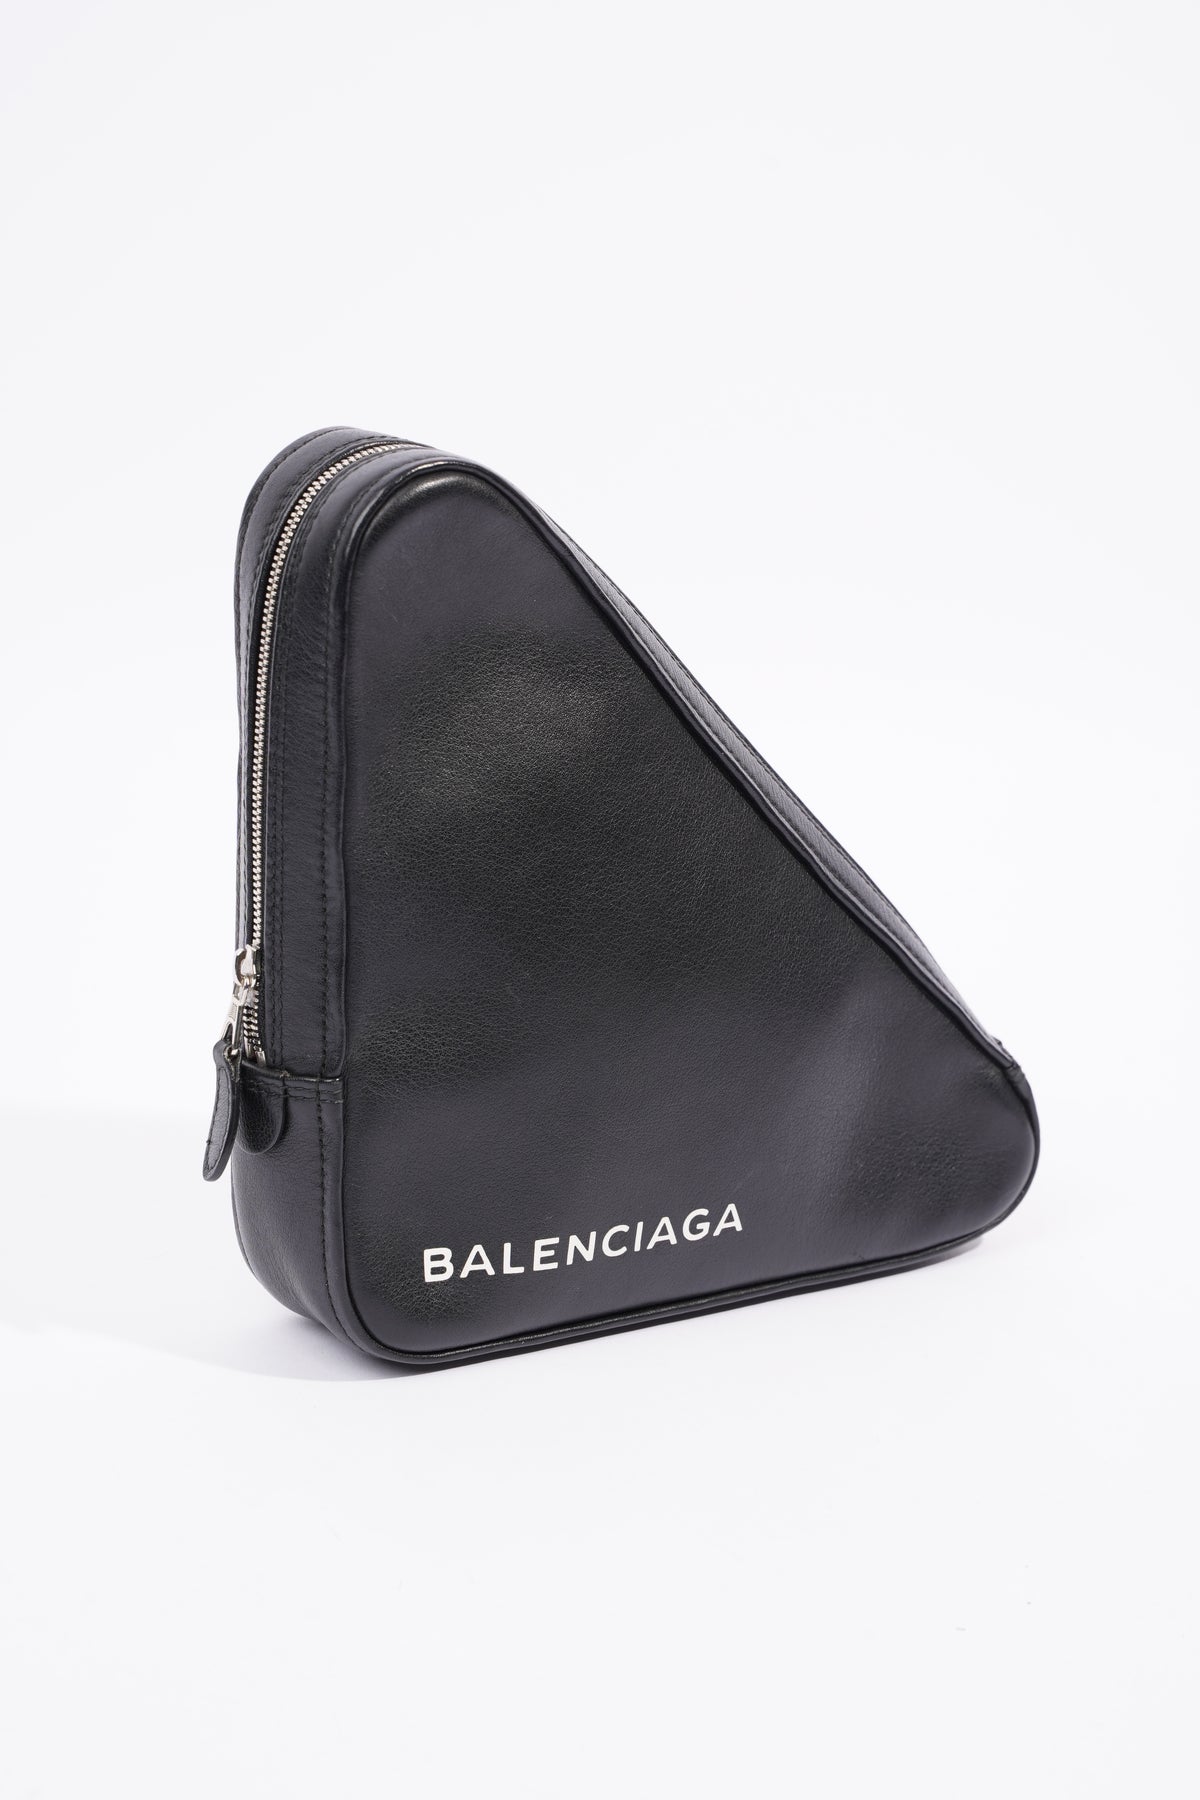 Women's Balenciaga Designer Handbags | Saks Fifth Avenue